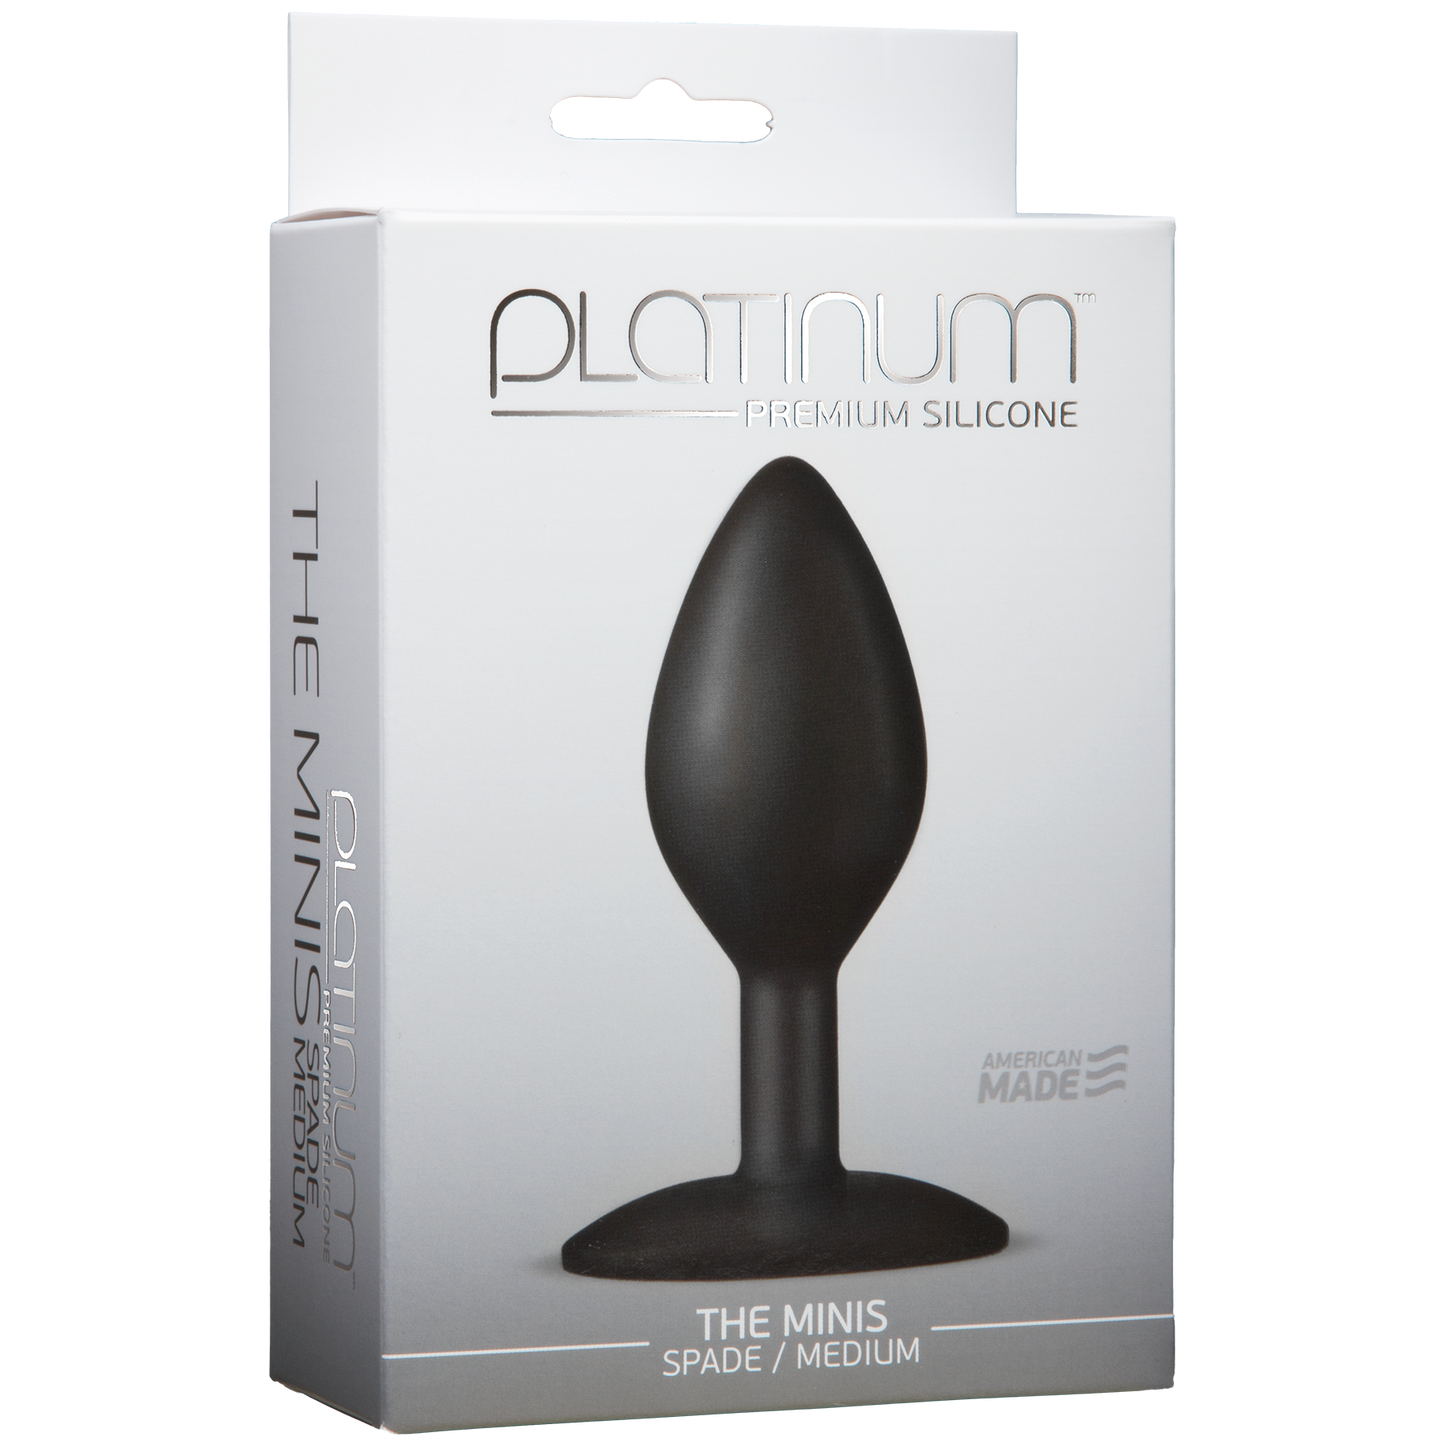 Platinum Premium Silicone The Mini's Spade - Medium, Black - Thorn & Feather Sex Toy Canada